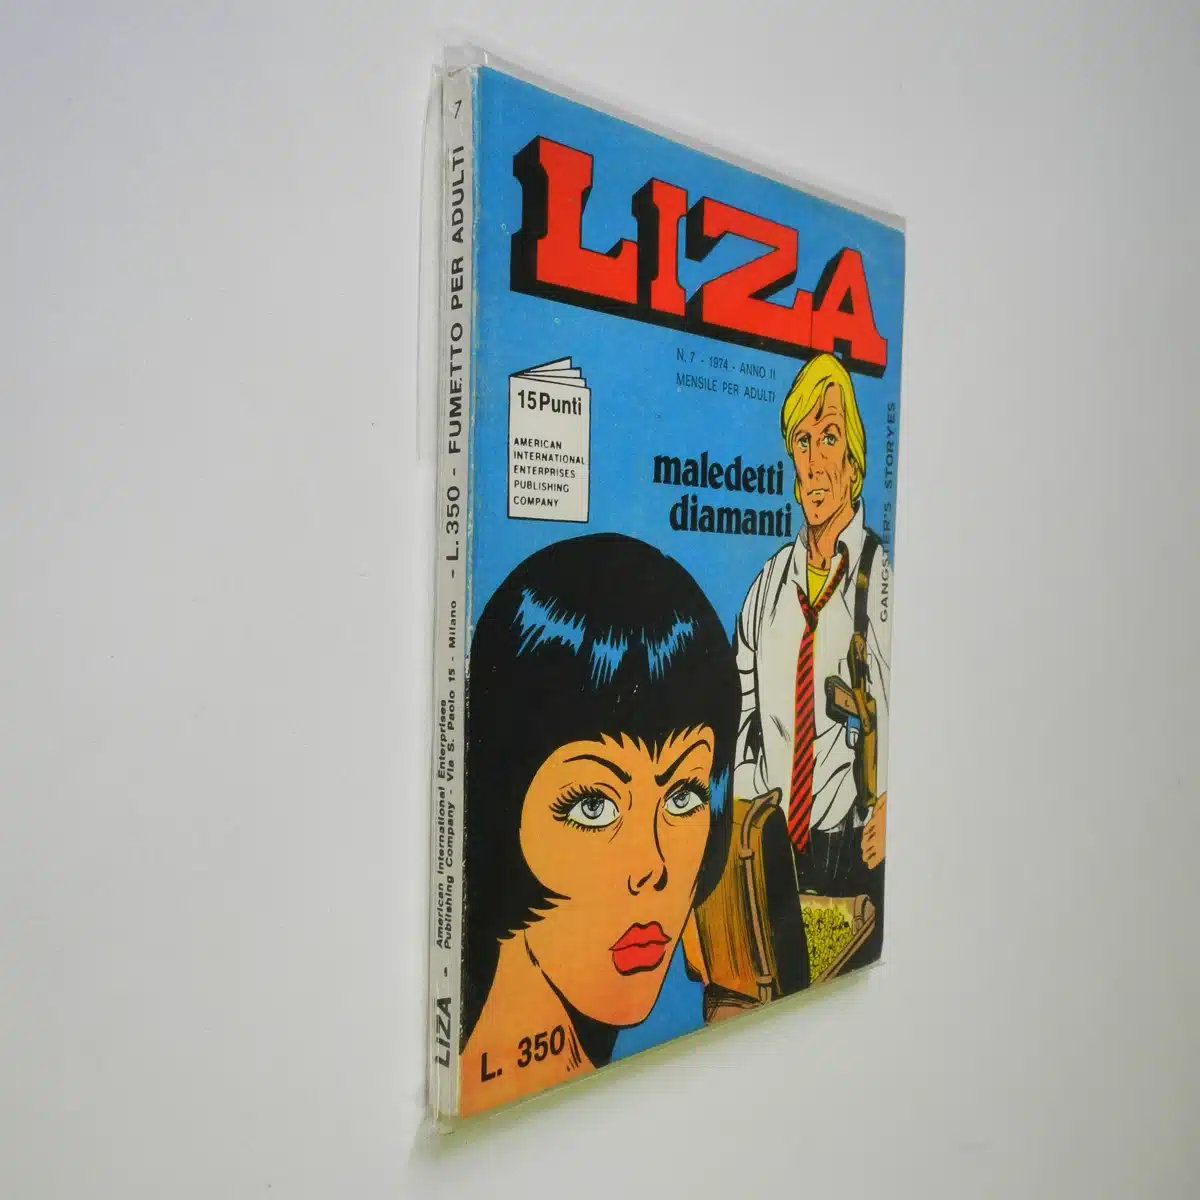 Fumetto di Liza 7 American International Publishing company del 1974 Maledetti diamanti